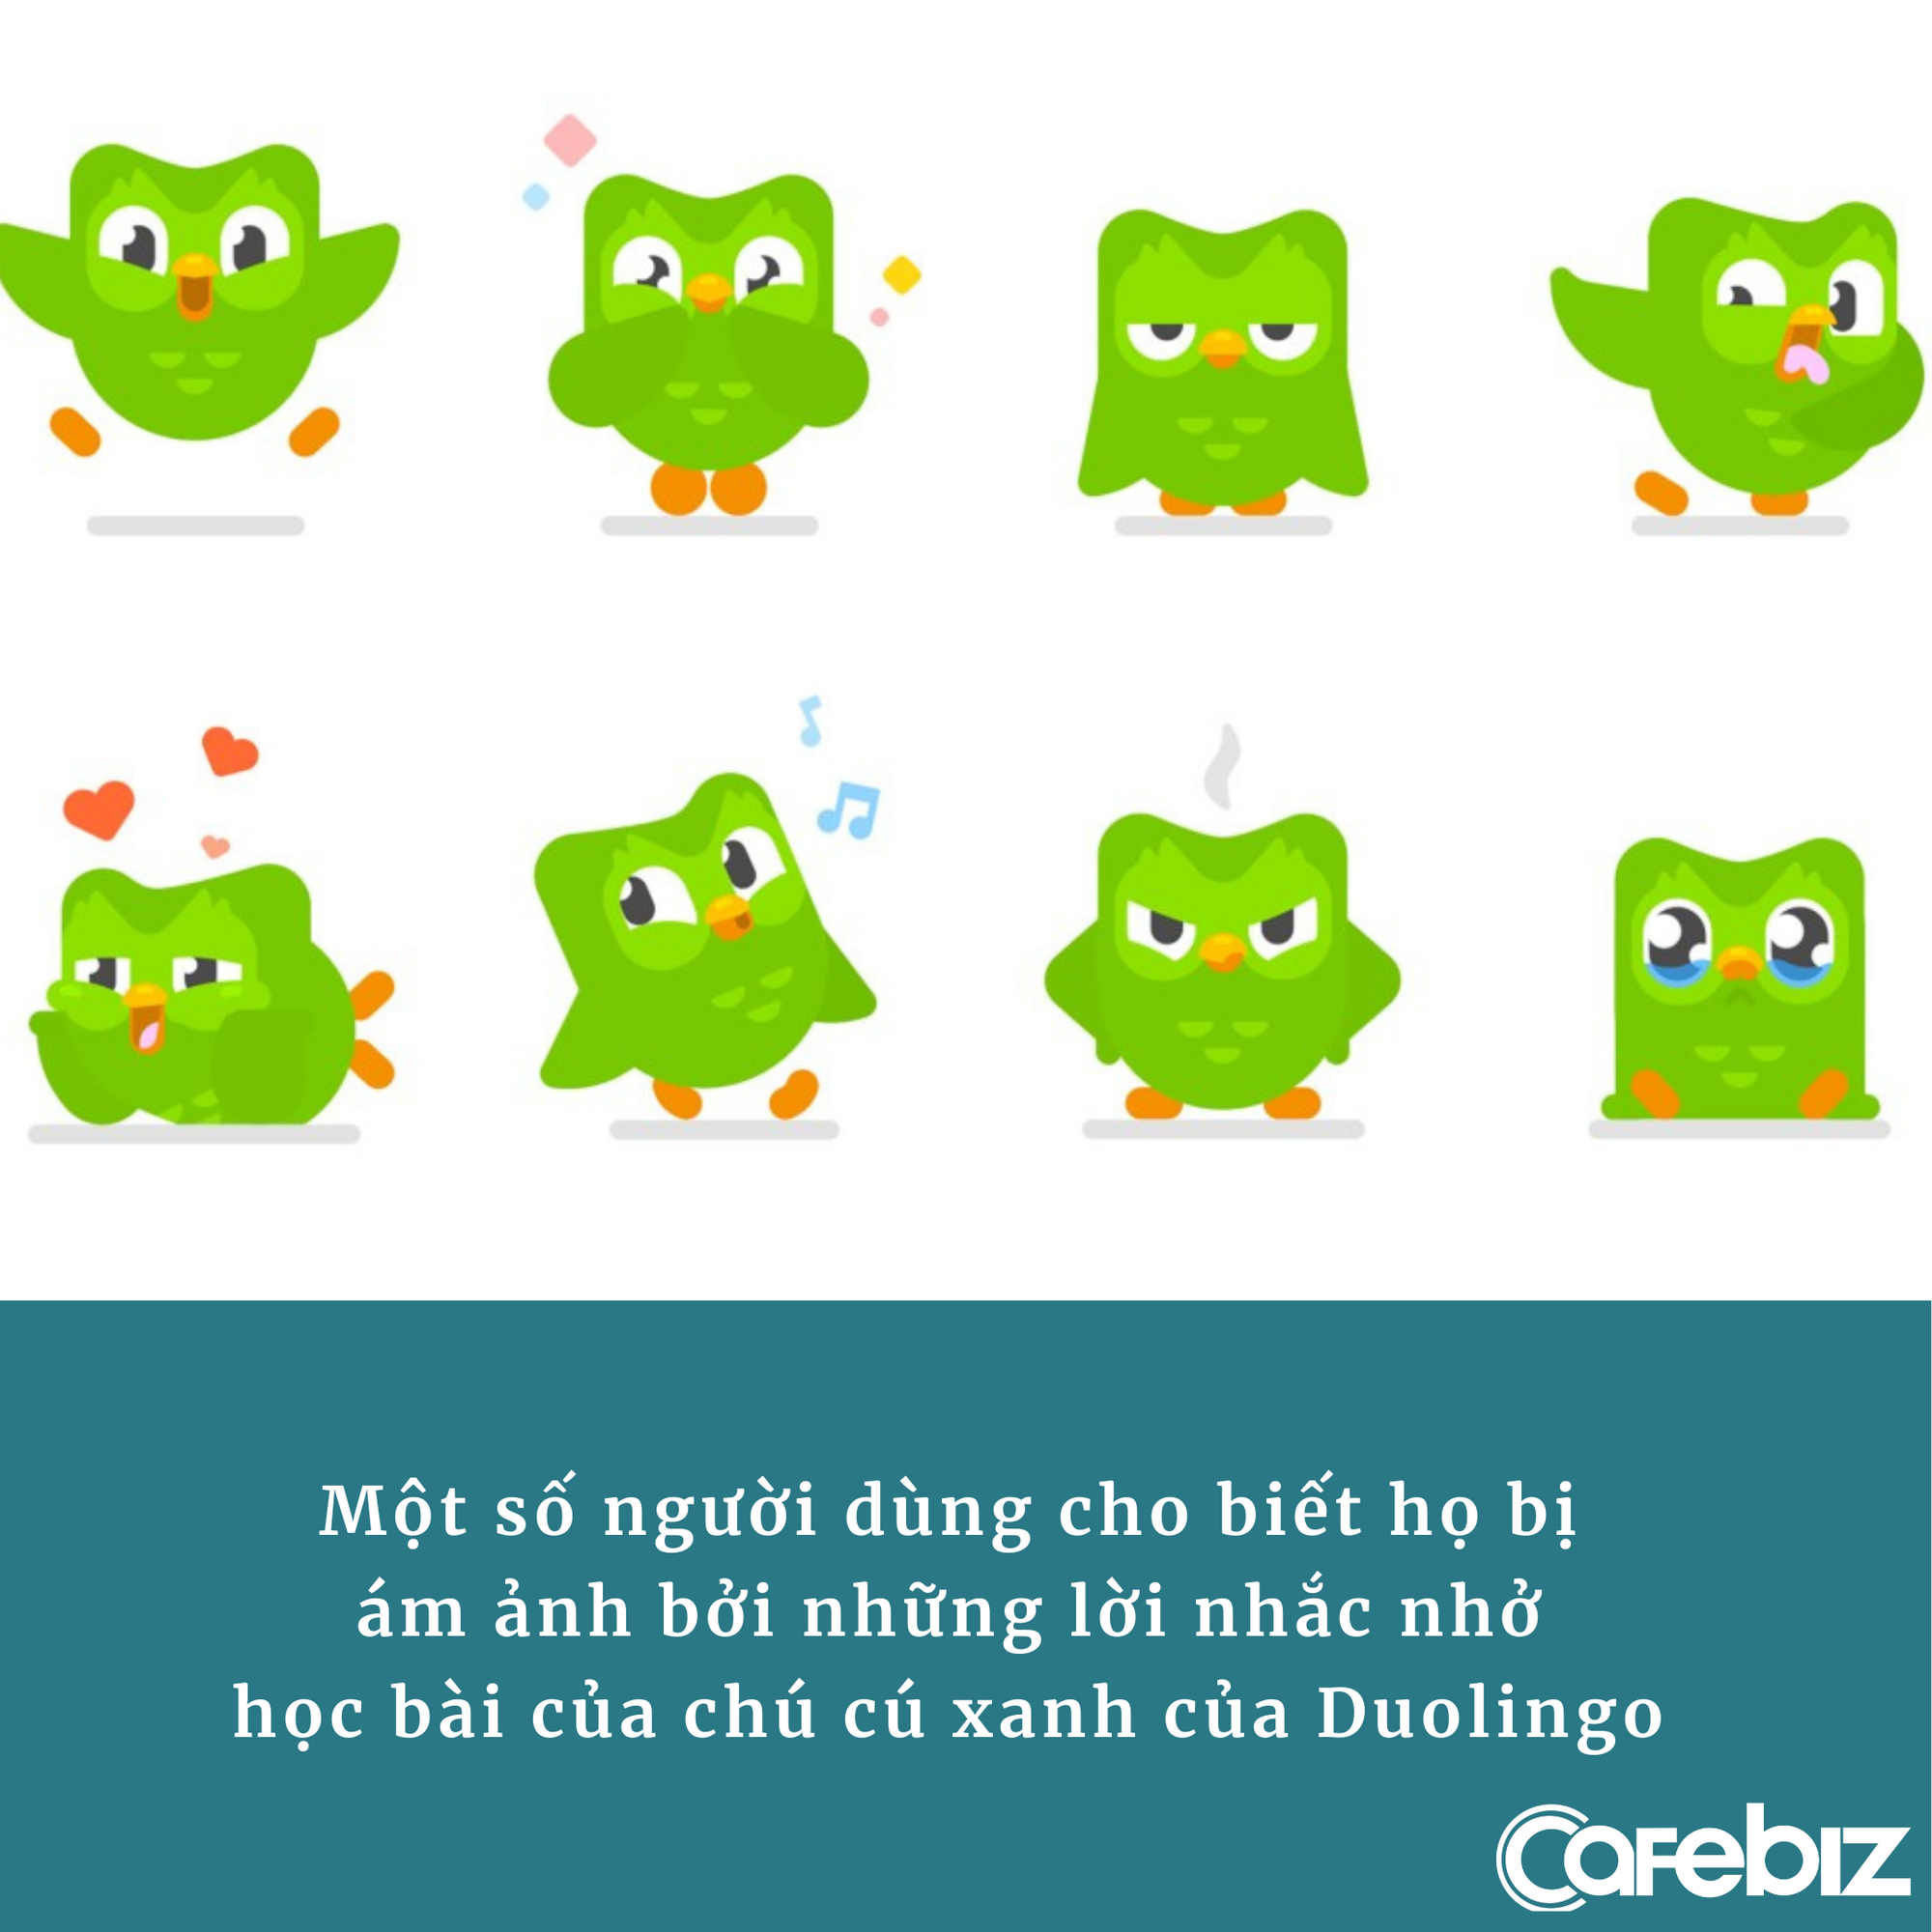 Duolingo phát triển app học Toán, người dùng hoang mang: Bị ‘cú xanh’ nhắc học ngoại ngữ là quá đủ rồi! - Ảnh 2.